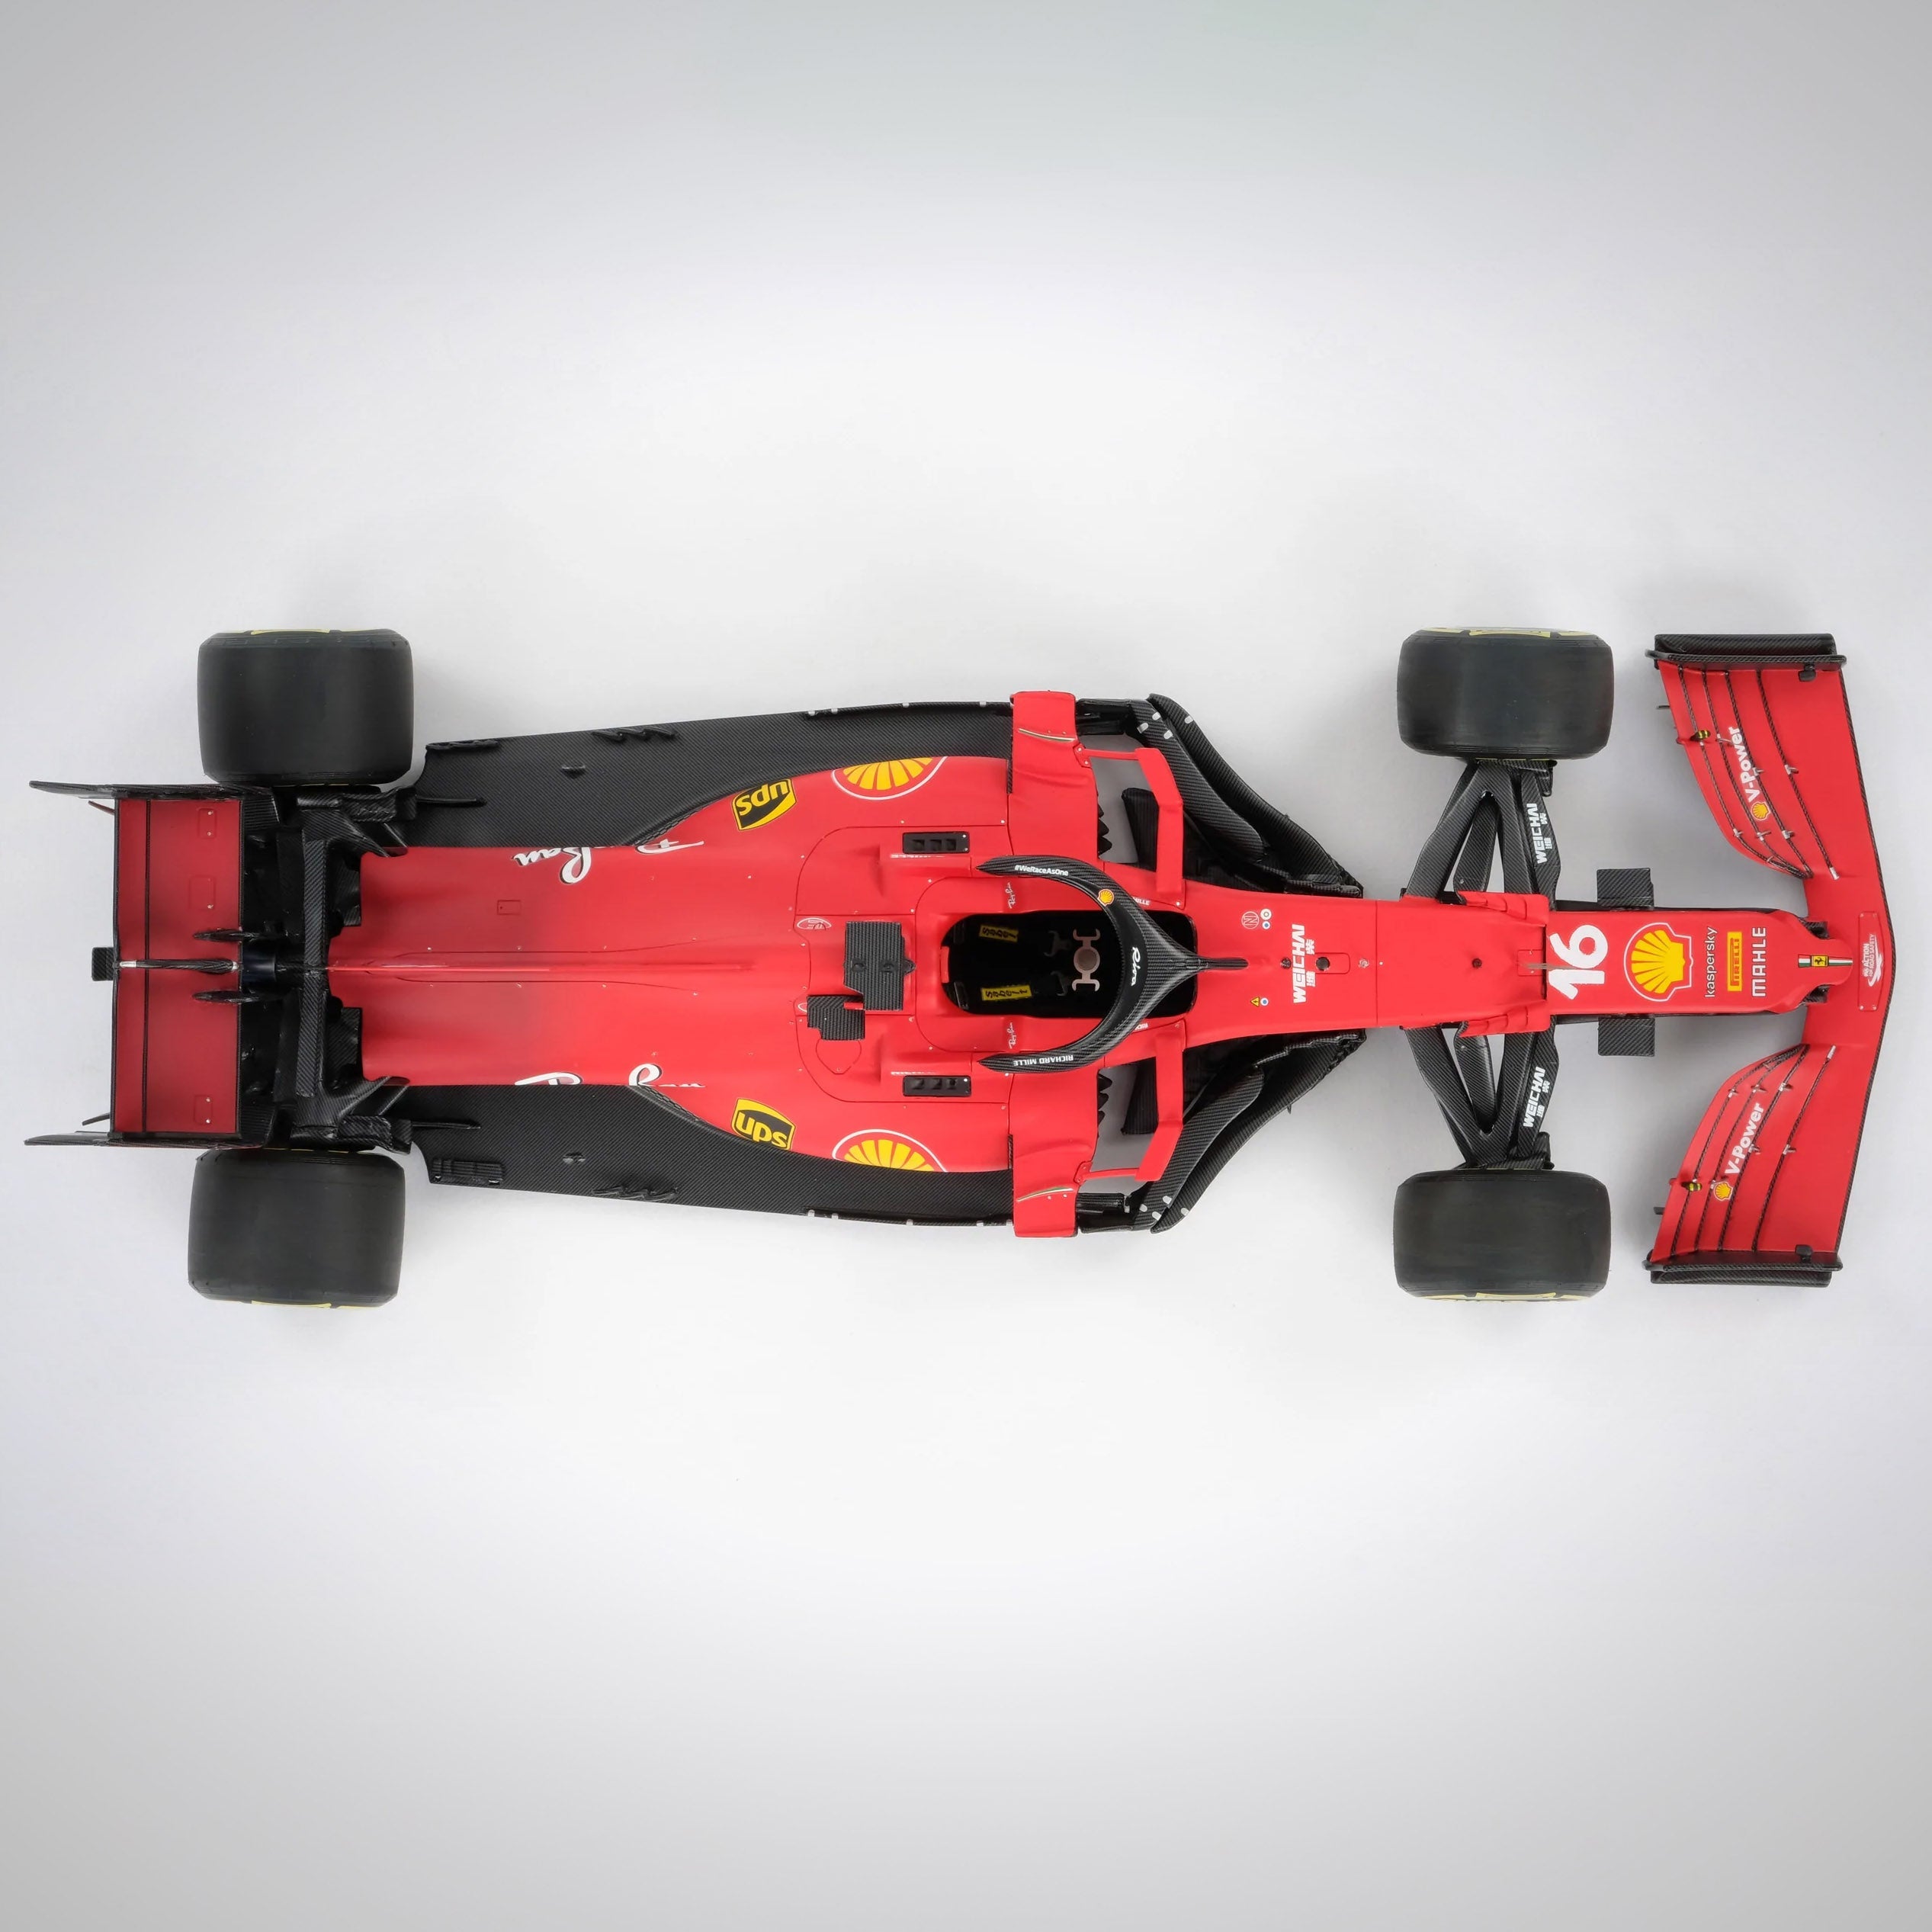 Charles Leclerc 2021 Scuderia Ferrari SF21 1:18 Scale Model